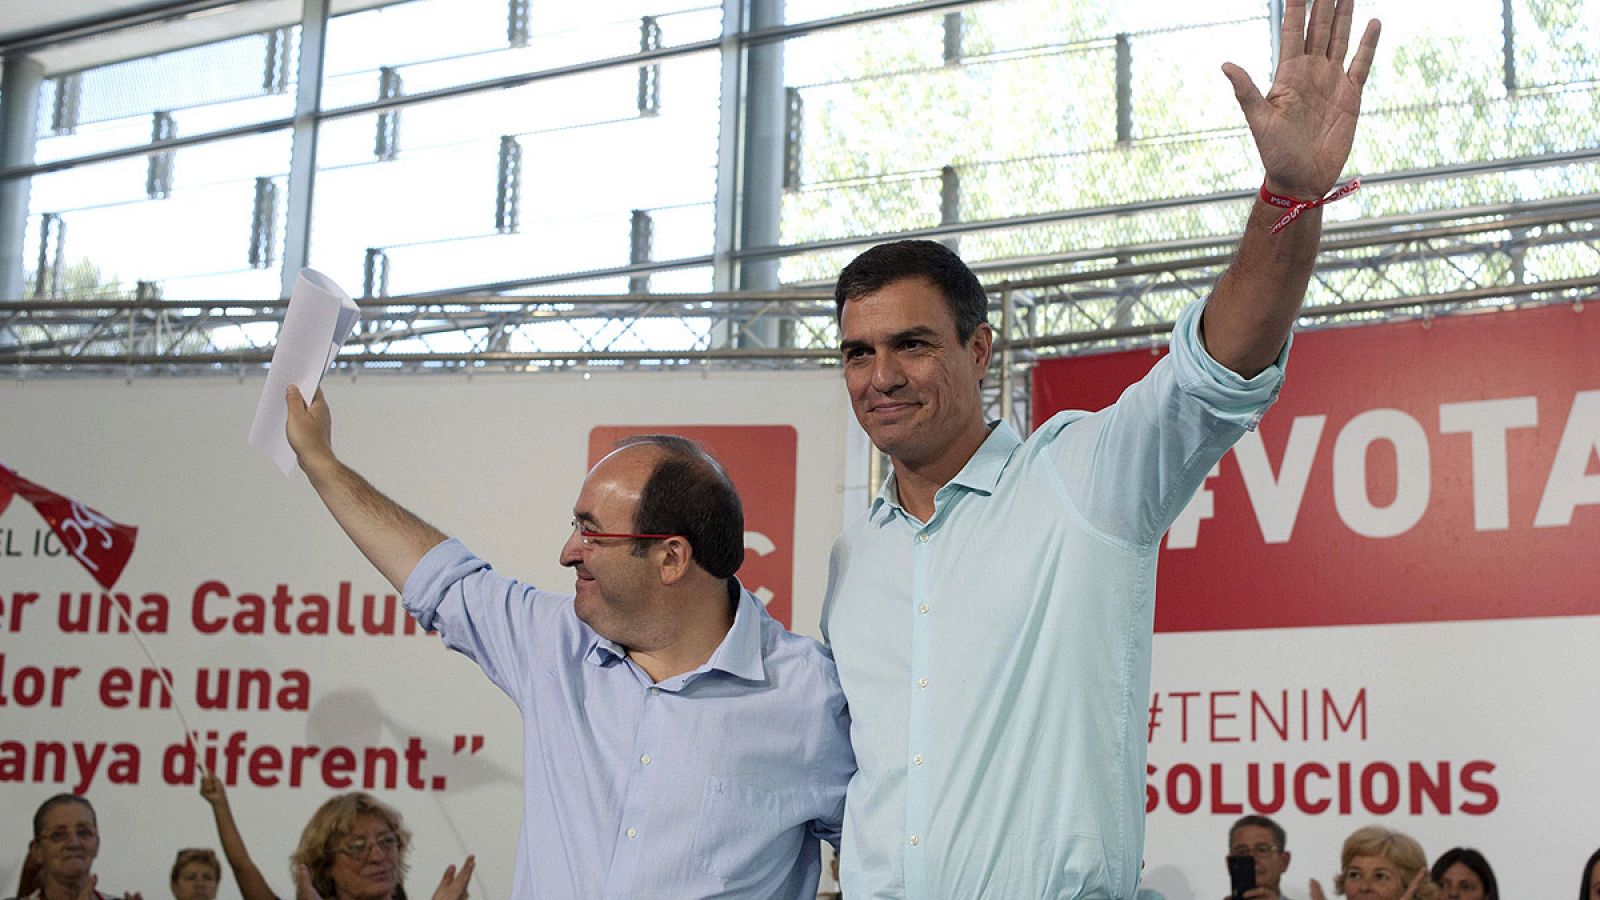 El secretario general socialista, Pedro Sánchez, y el candidato del PSC en las elecciones catalanas, Miquel Iceta, en un acto político en Girona.